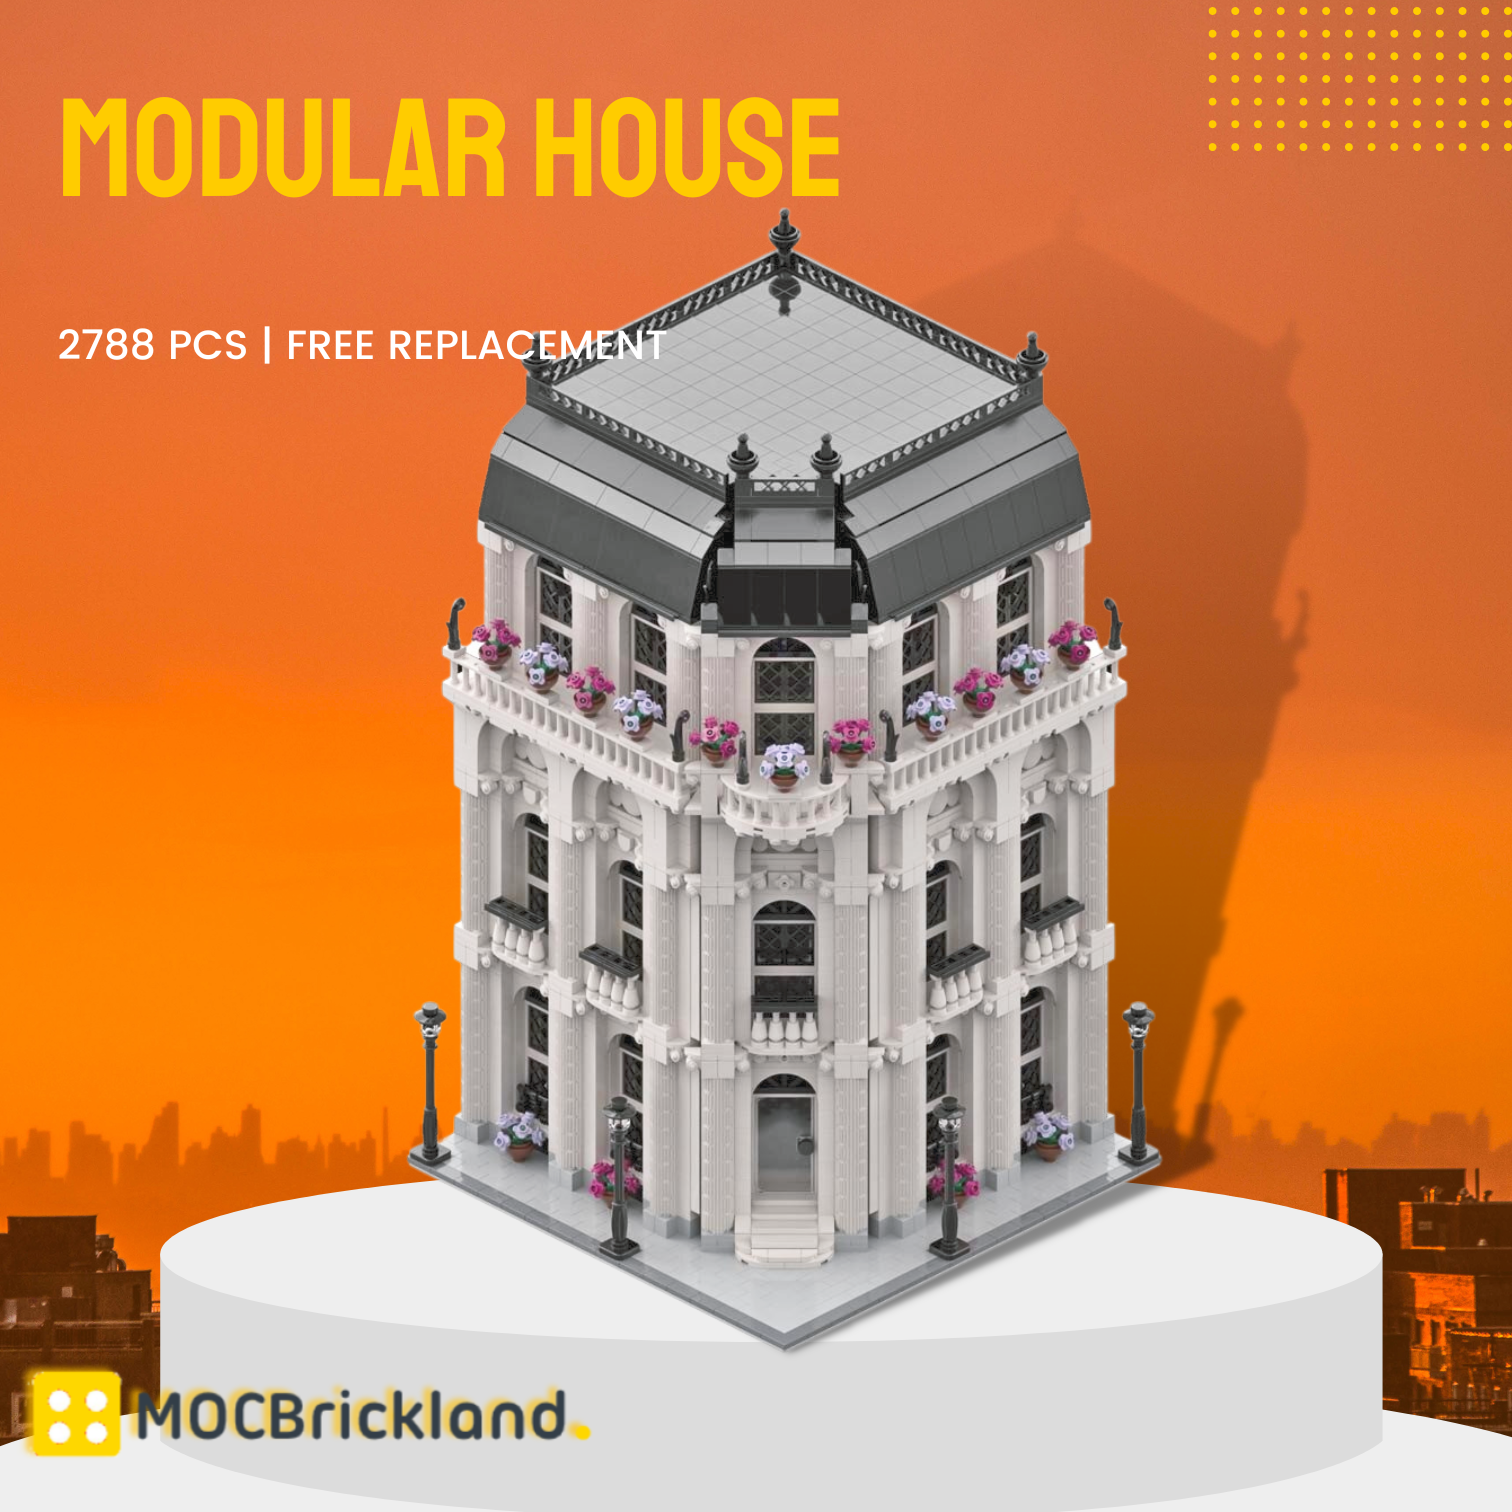 Modular House MOC-39837 Modular Buildings With 2788 Pieces